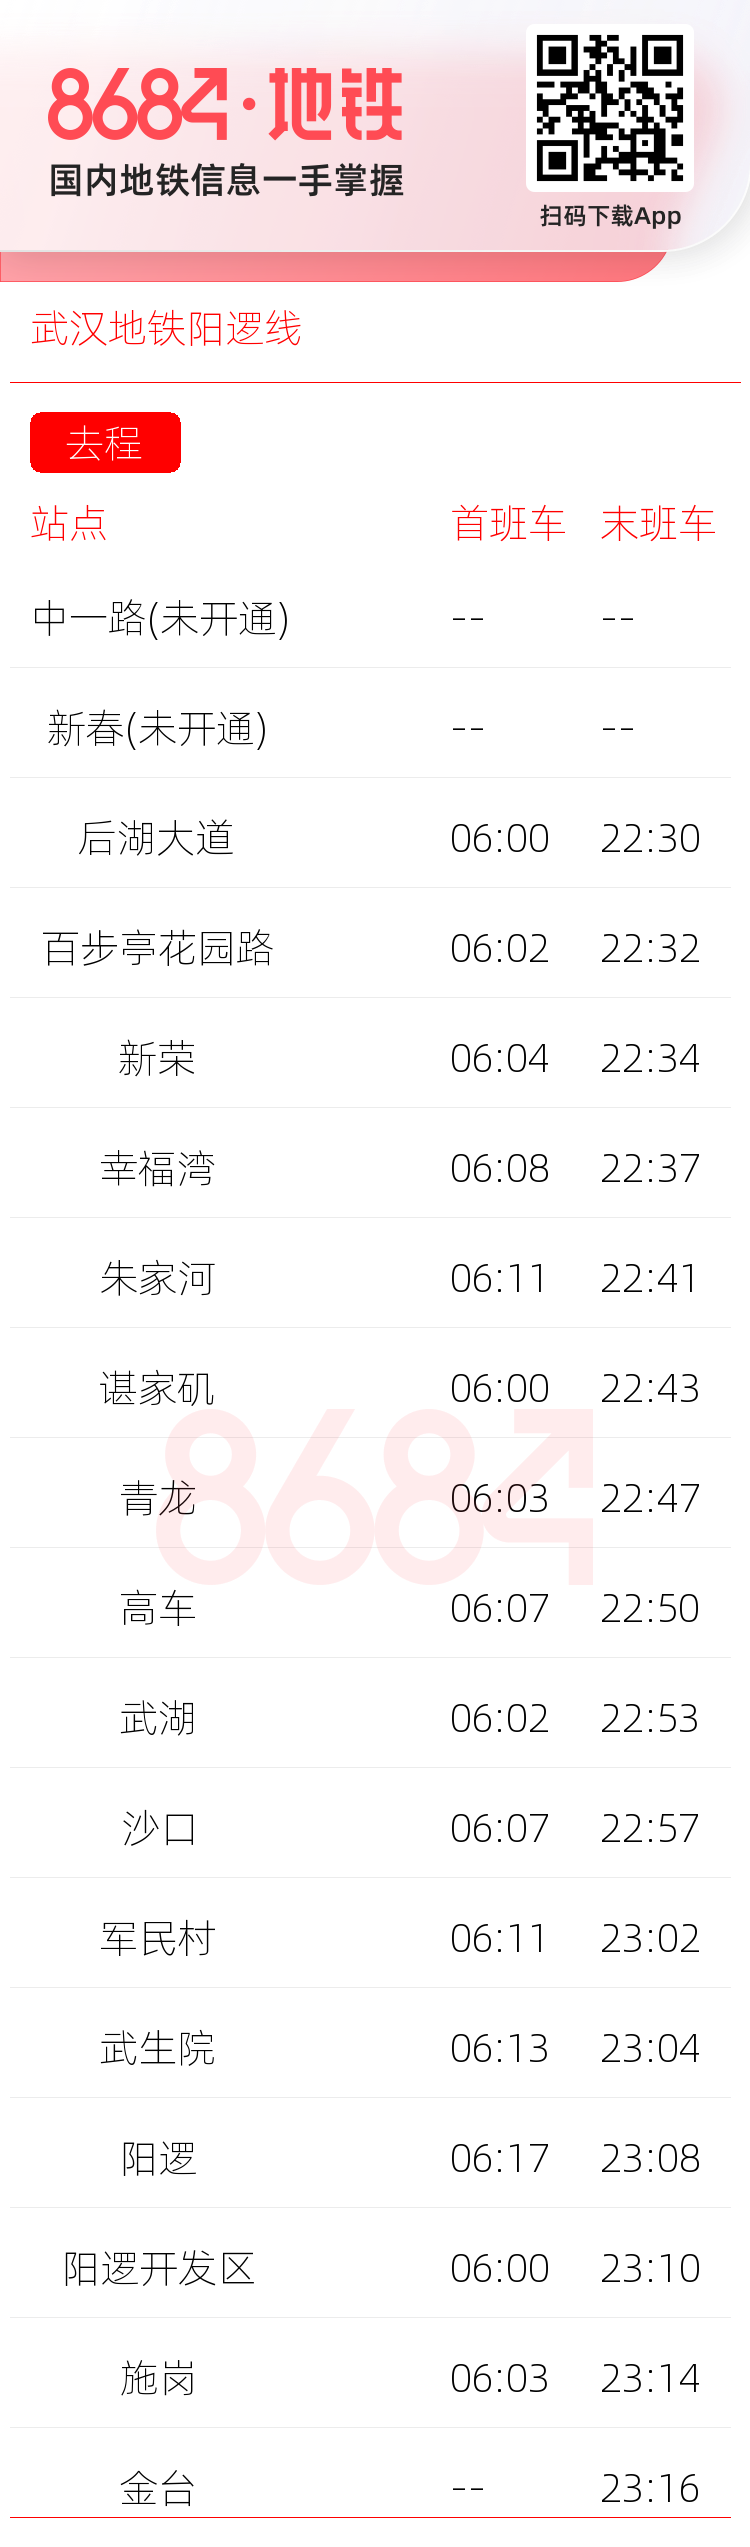 武汉地铁阳逻线运营时间表